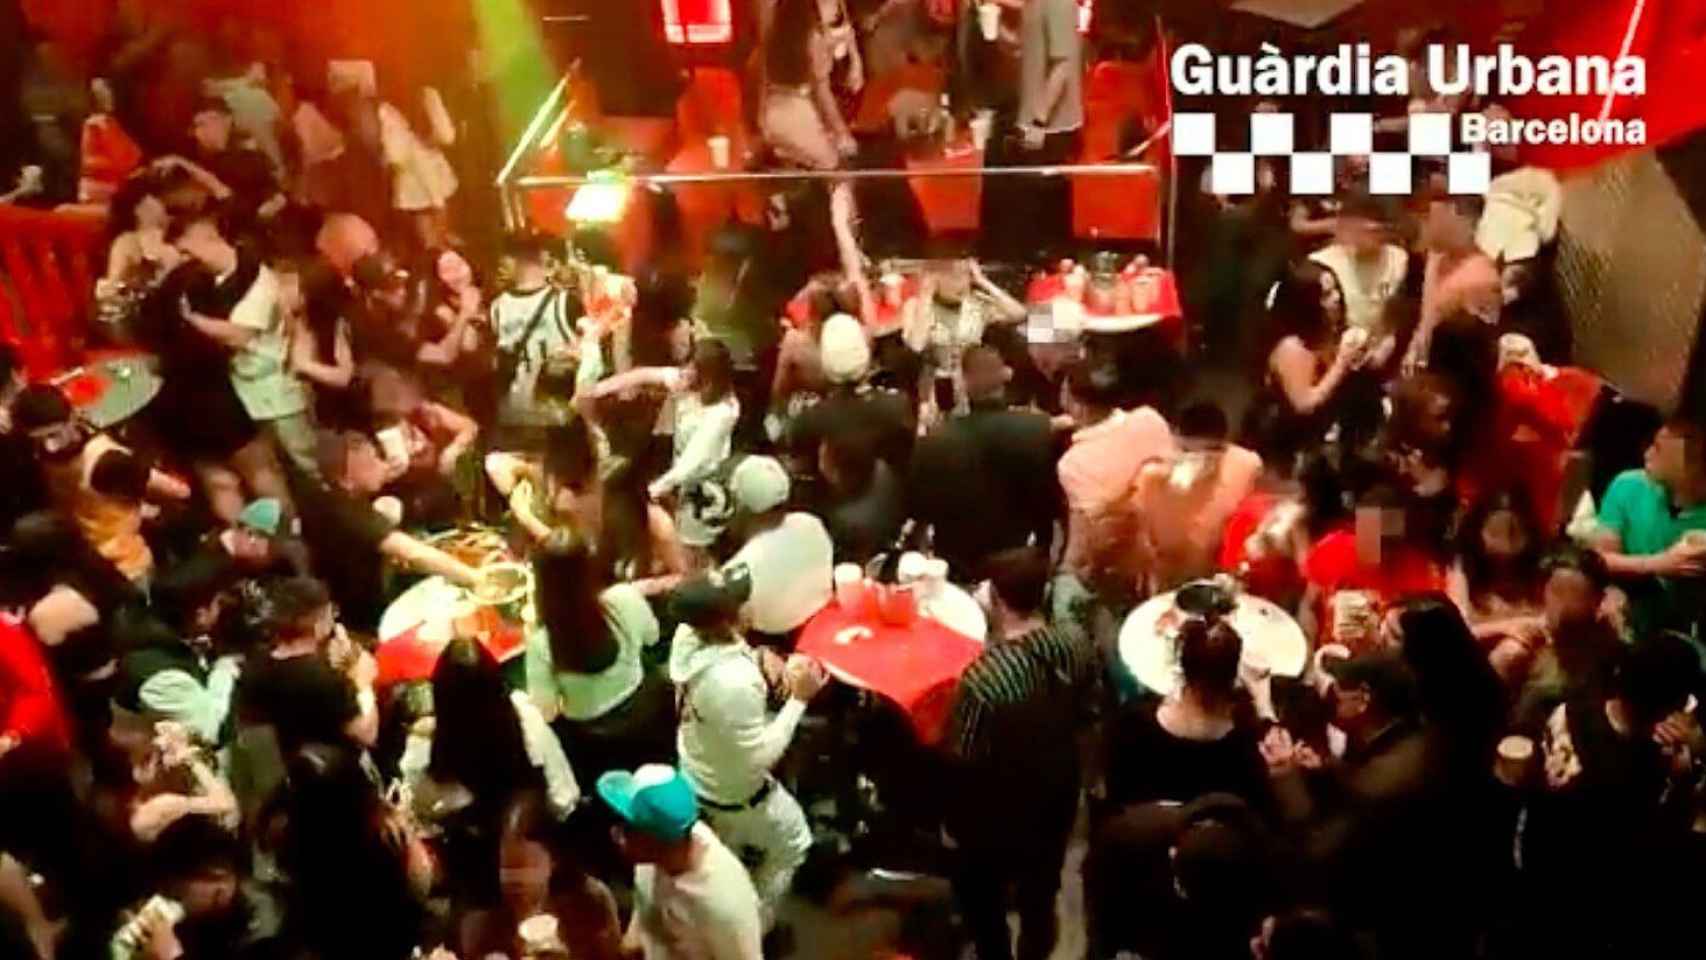 Una de las dos fiestas descontroladas desalojadas en Barcelona / GUARDIA URBANA